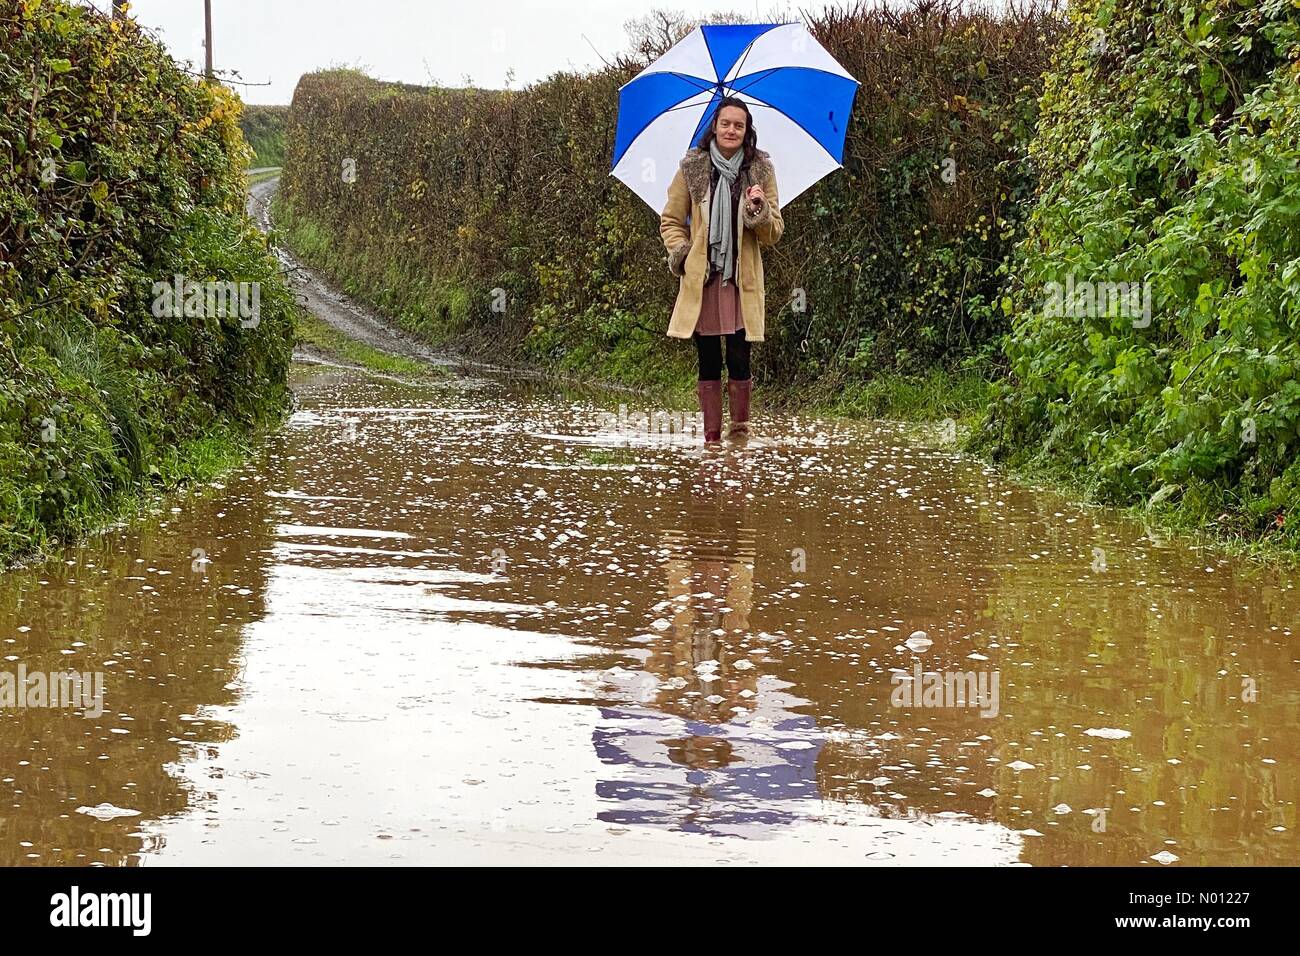 Dunsford, Devon. 23 Nov 2019. Météo France : inondations dans les ruelles à Dunsford. Raich Keene brave les éléments sur une matinée de marche. /StockimoNews nidpor : Crédit/Alamy Live News Banque D'Images